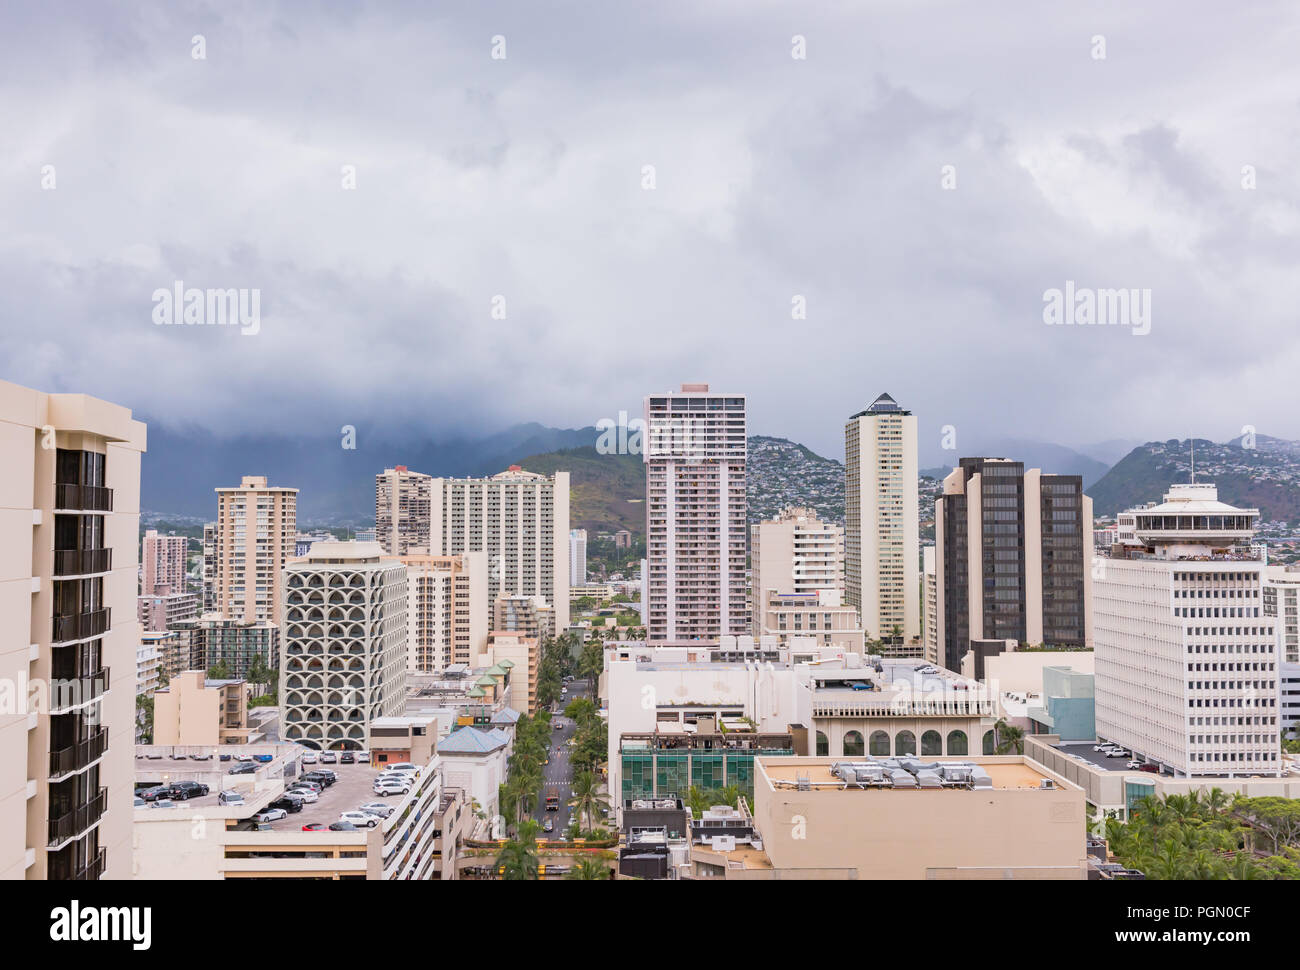 Honolulu, Hawaï / USA - 26 août 2018 : Vue aérienne de nuages sur Waikiki grands bâtiments comme conséquences de l'Ouragan Lane demeure. Banque D'Images